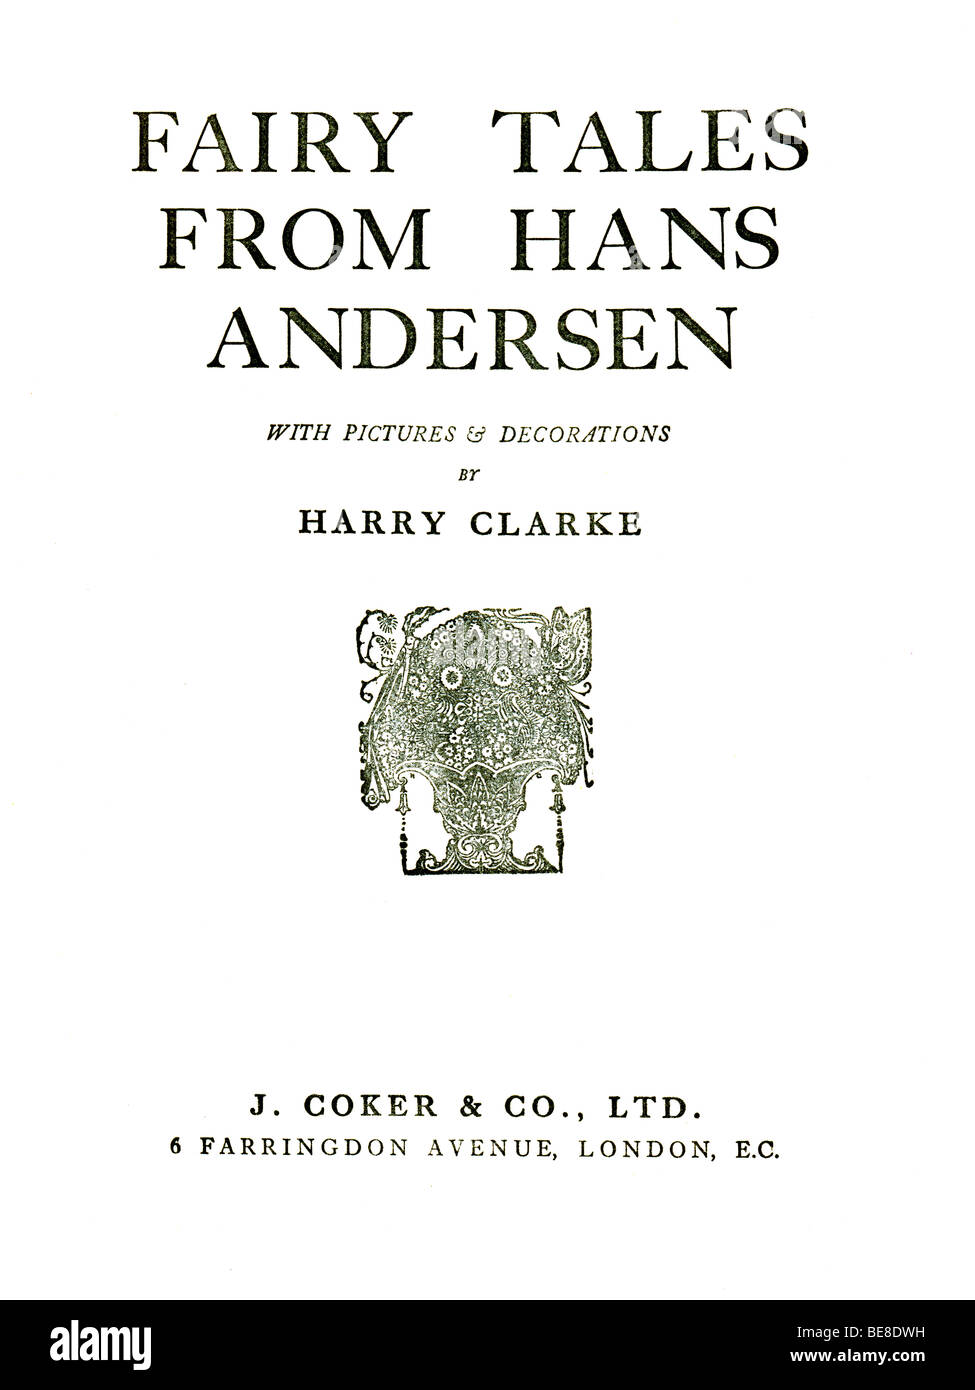 Libro de tapa dura Hans Andersen 's cuentos de hadas publicado por J Coker & Co de Londres c 1930 para uso editorial sólo Harry Clarke Foto de stock